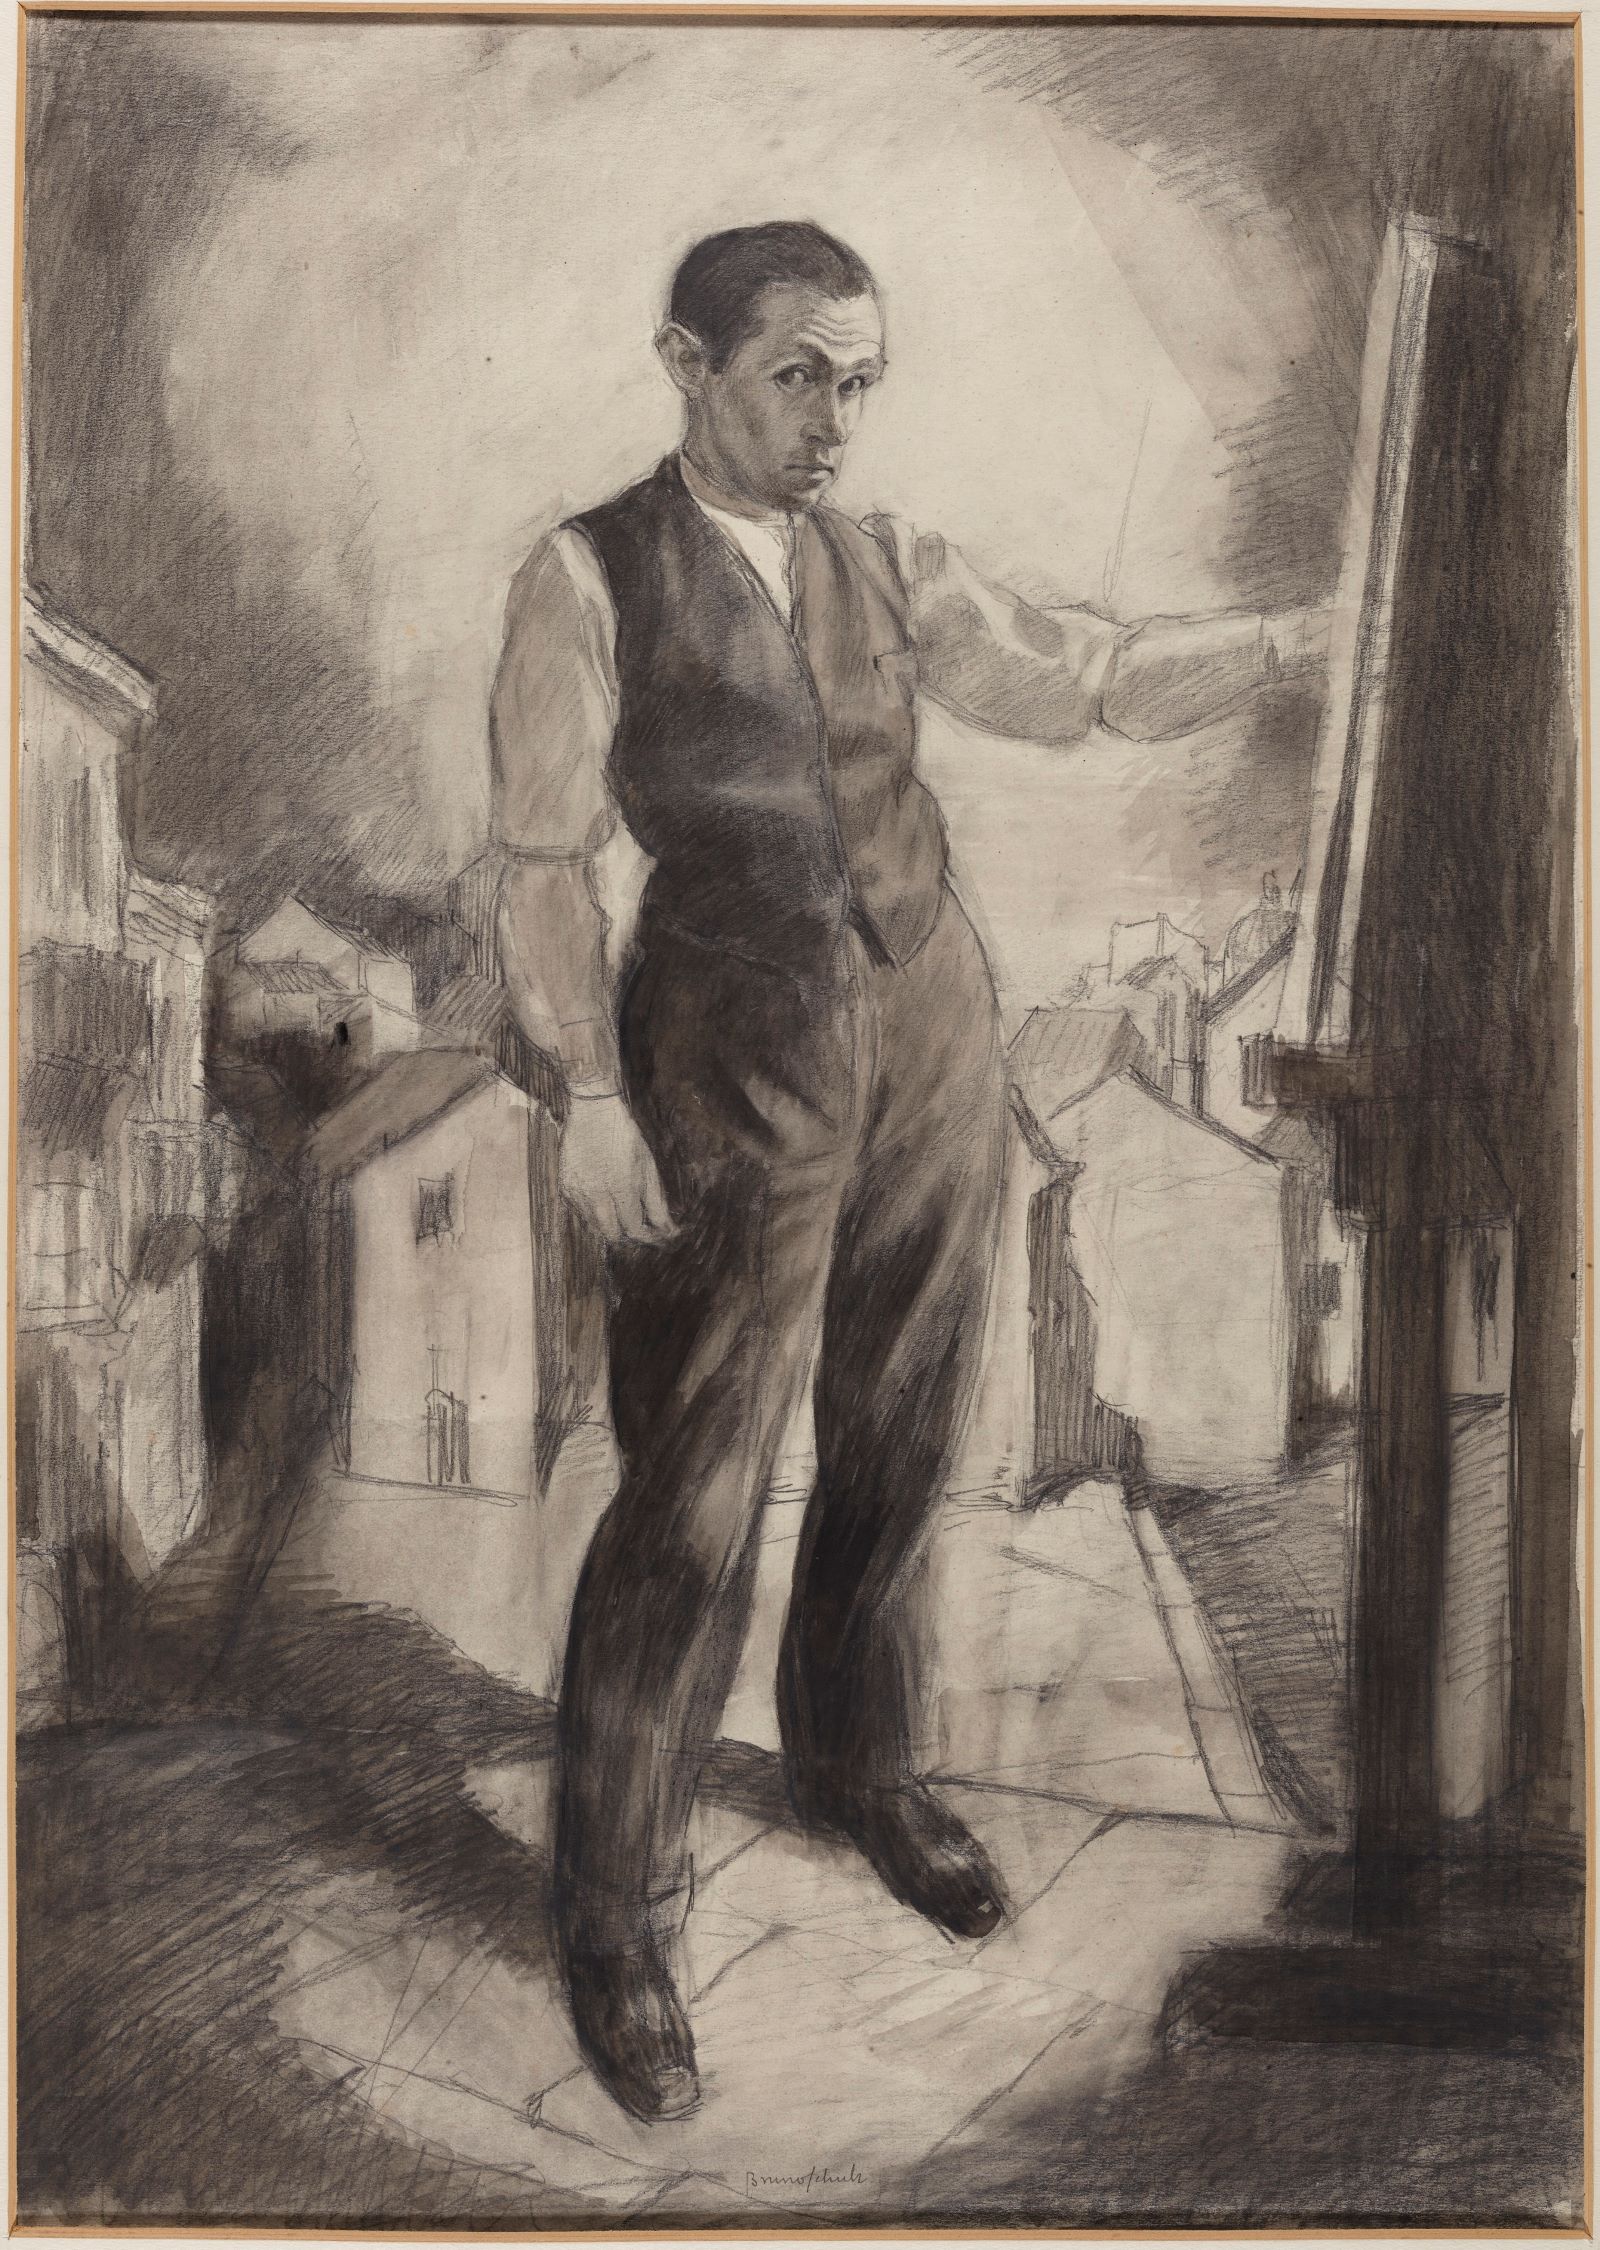 Rysunek przedstawiający Brunona Schulza. Mężczyzna w trakcie pracy, stoi, przed nim stoi płótno, na którym coś szkicuje.